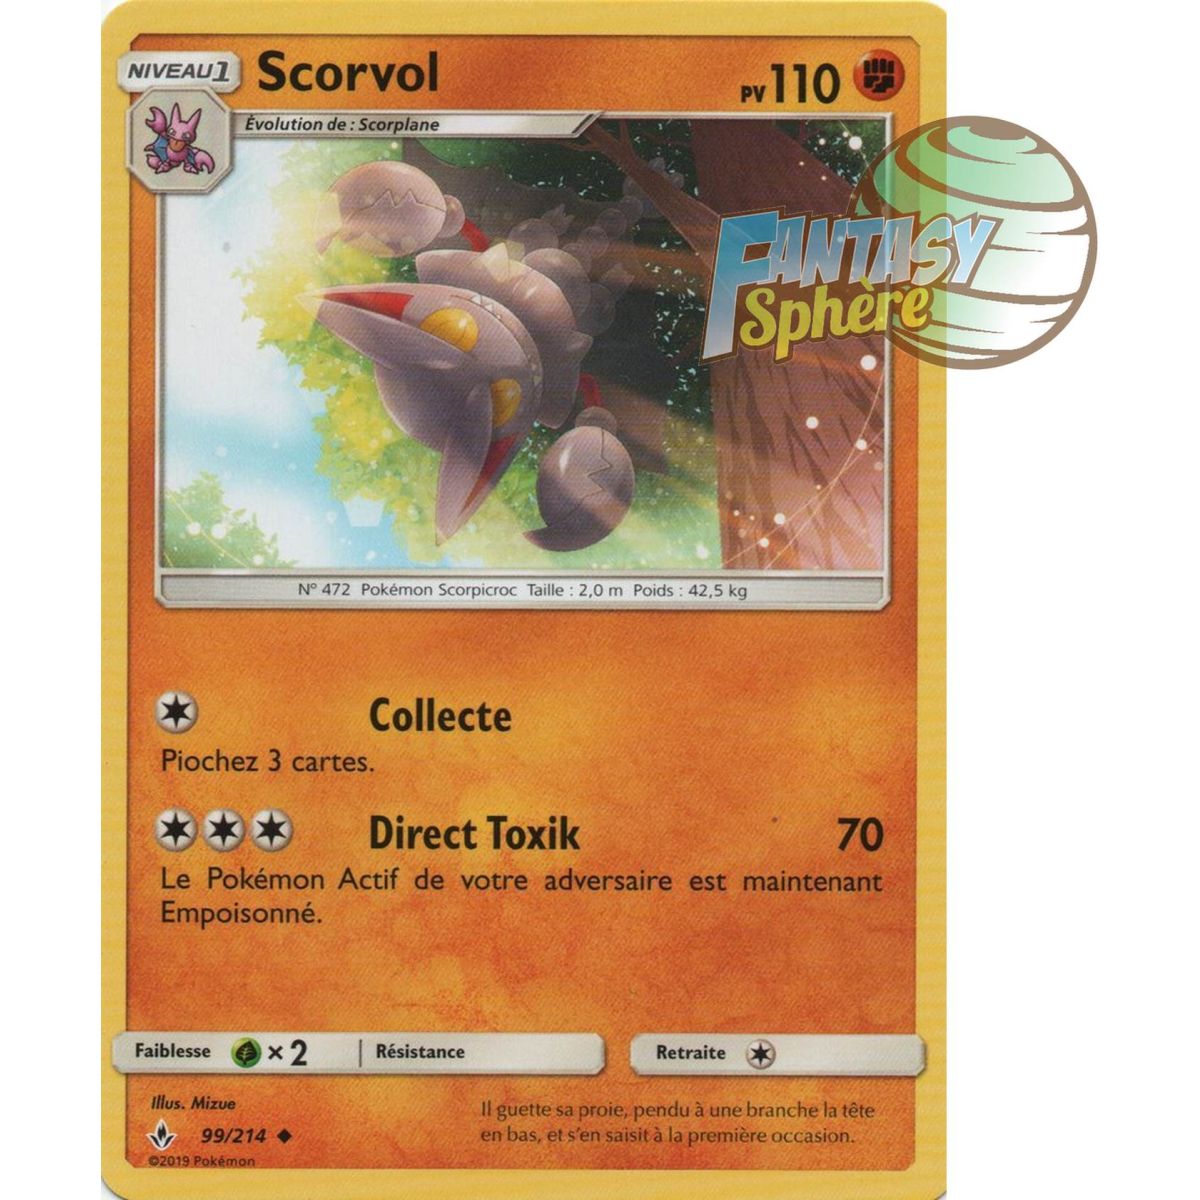 Scorvol - Uncommon 99/214 - Sun and Moon 10 Infallible Alliance